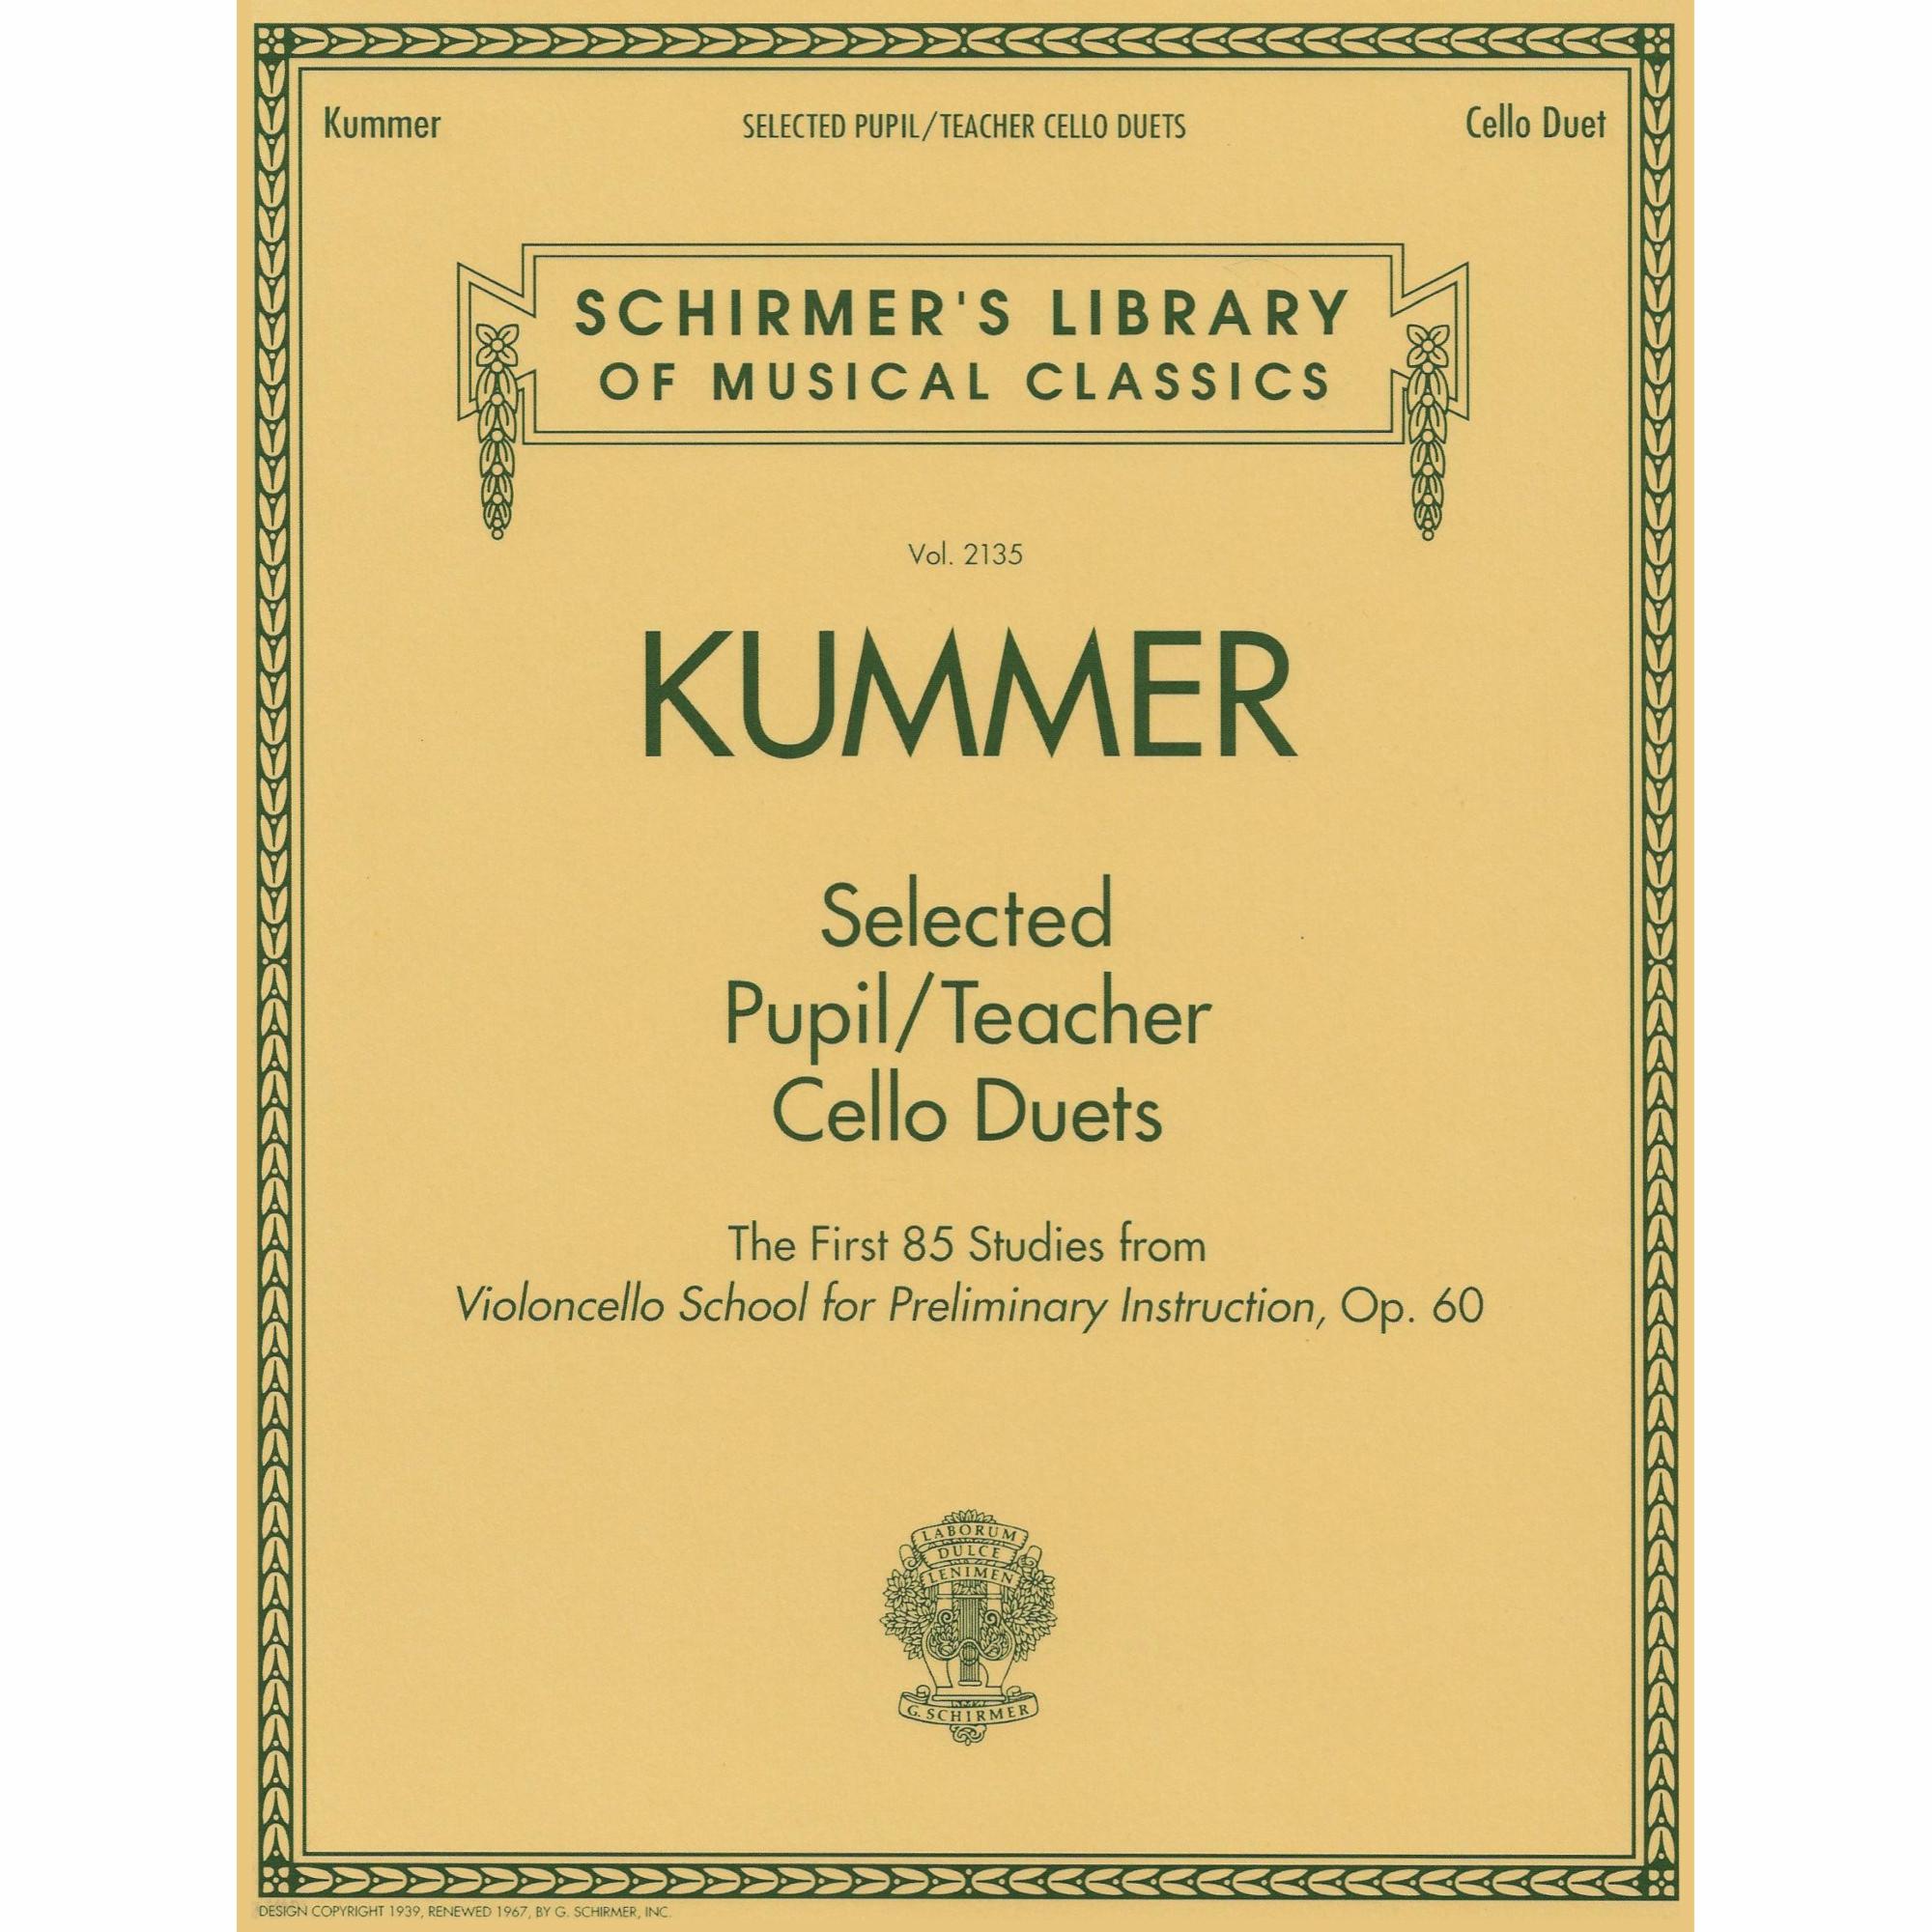 Kummer -- Selected Pupil/Teacher Cello Duets